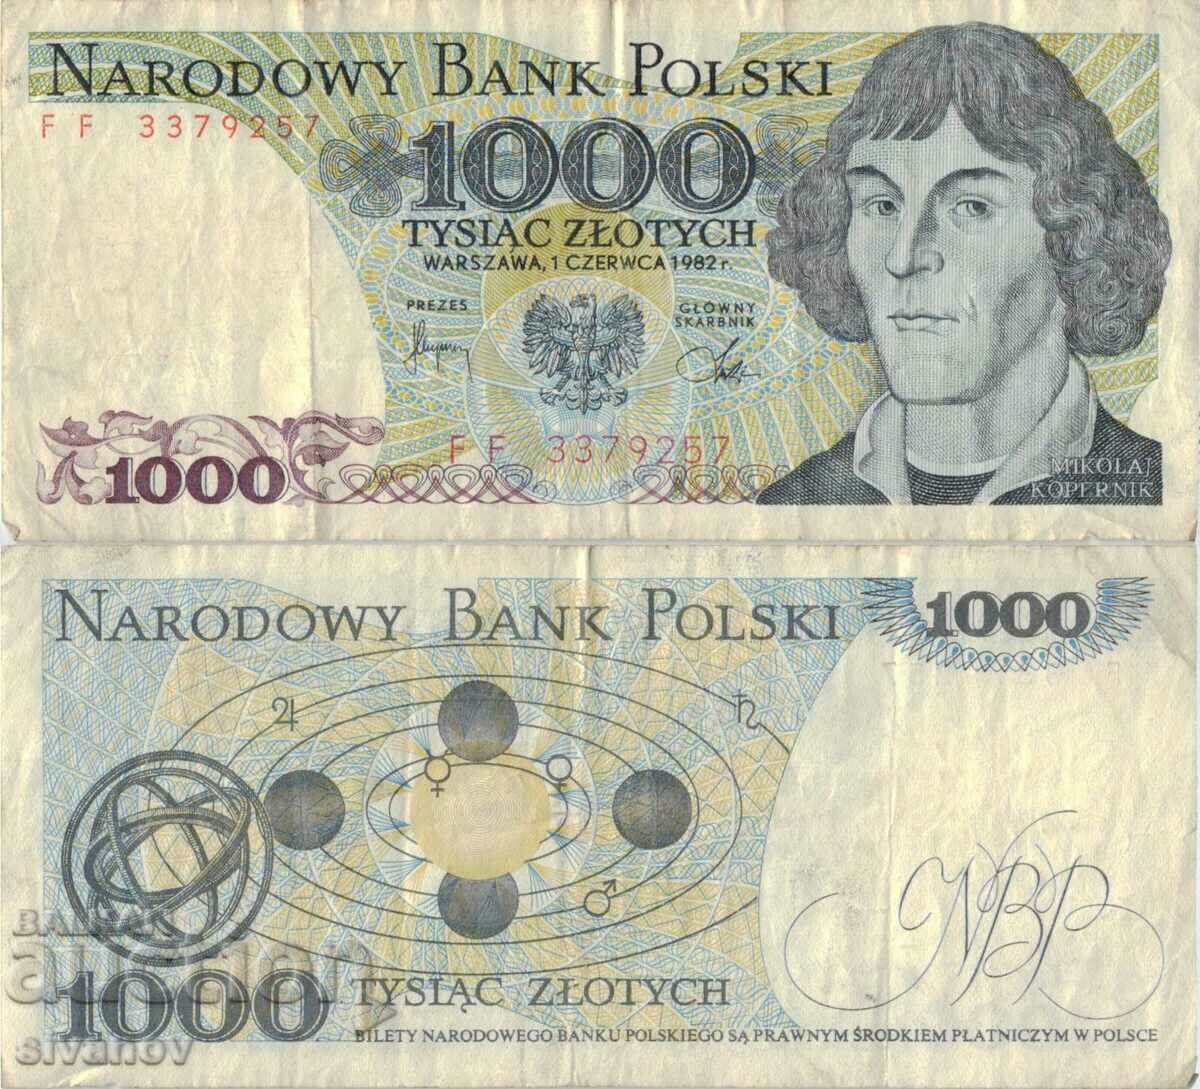 Poland 1000 zloty 1982 banknote #5315